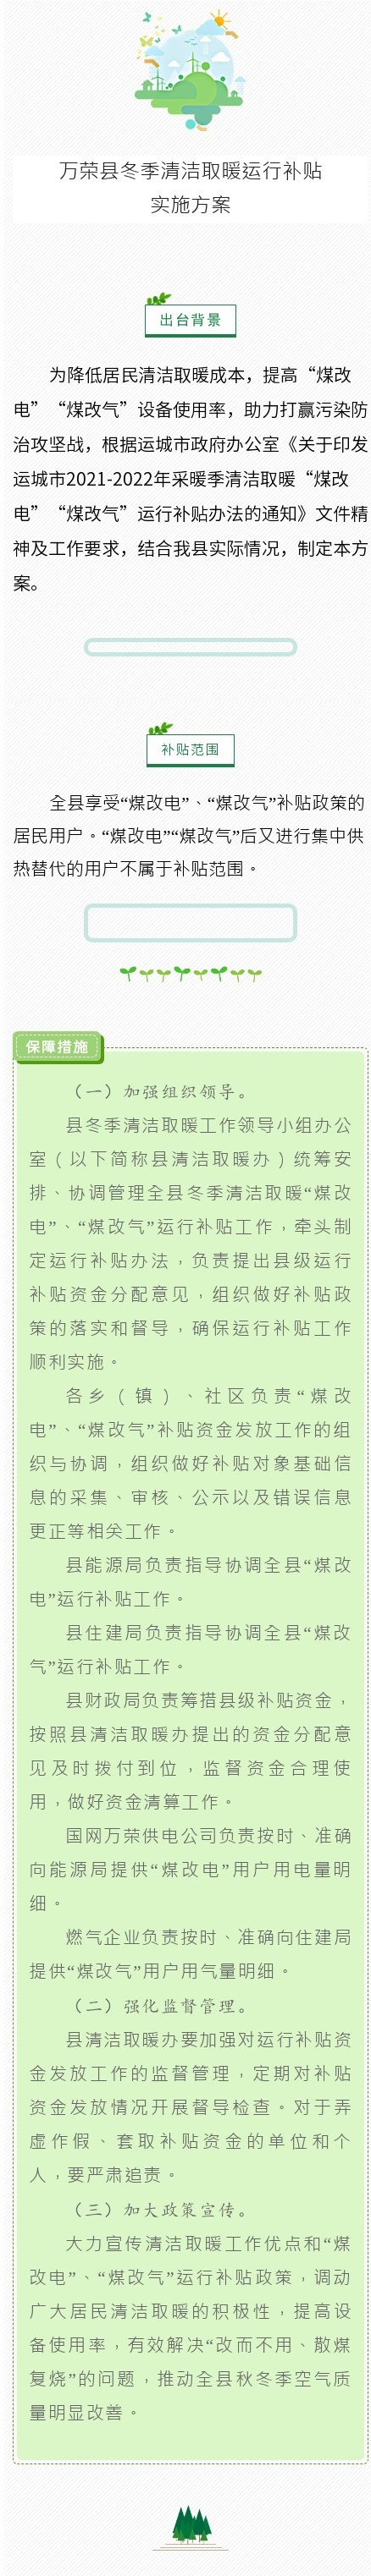 万荣县2021—2022年冬季清洁取暖运行补贴实施方案